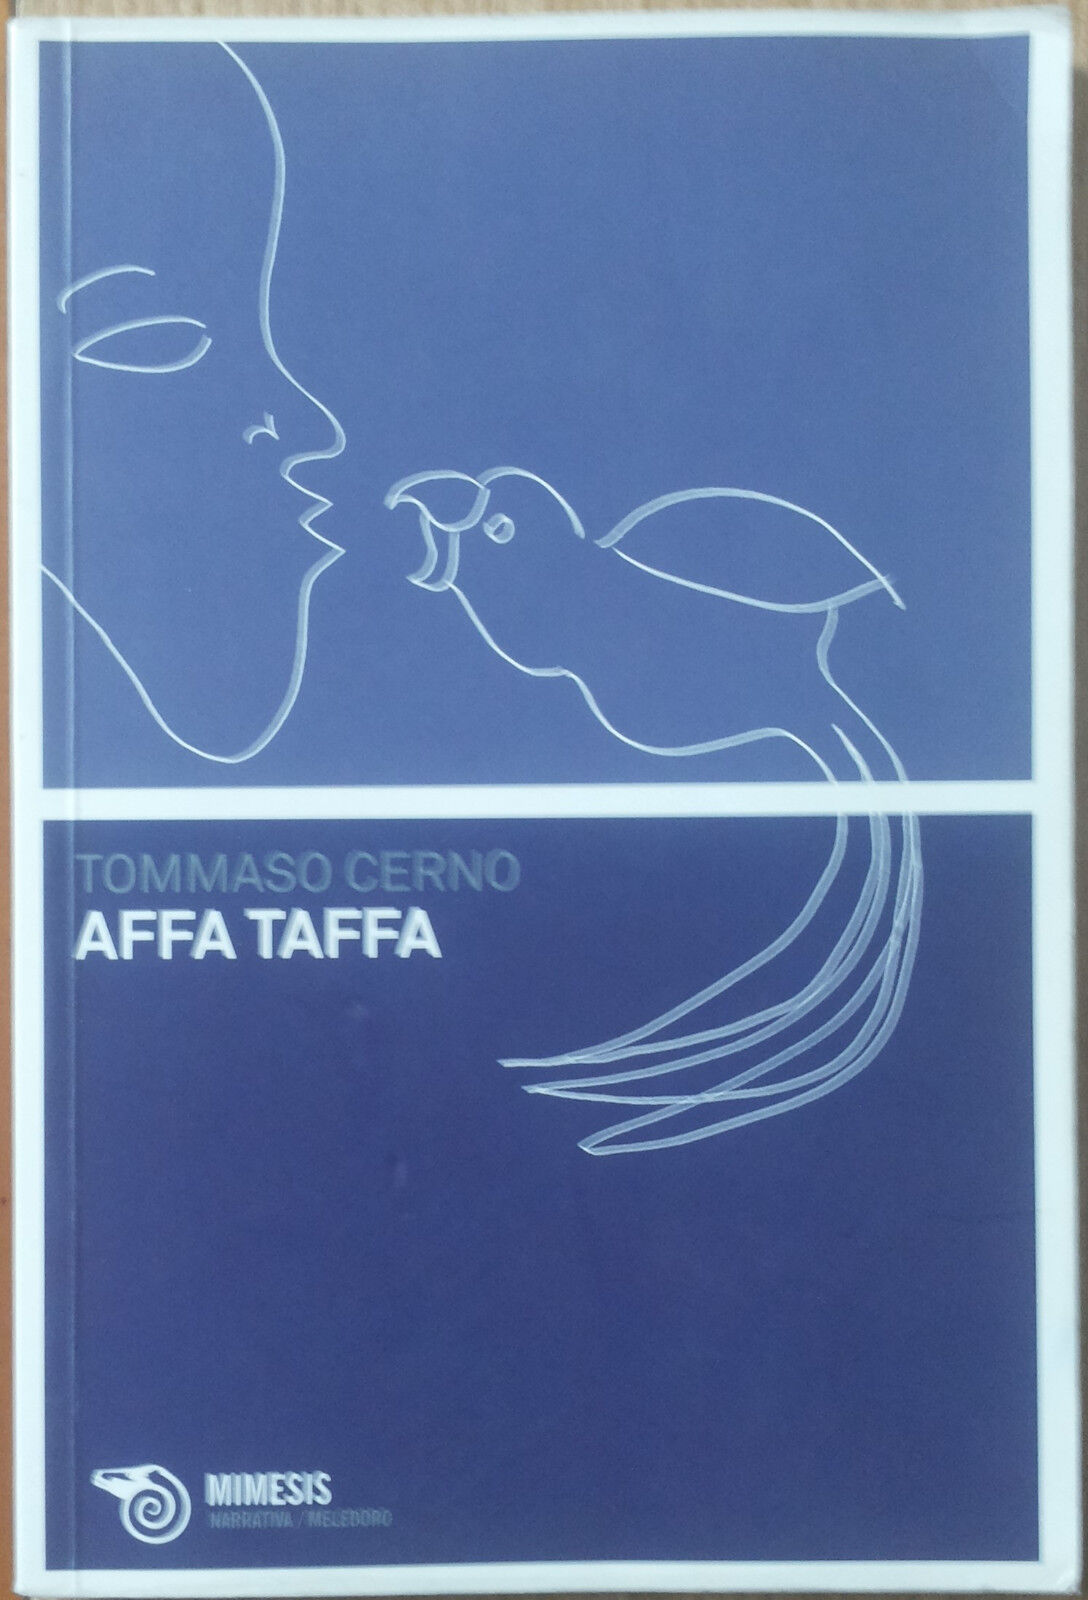 Affa Taffa - Cerno - Mimesis,2010 - R